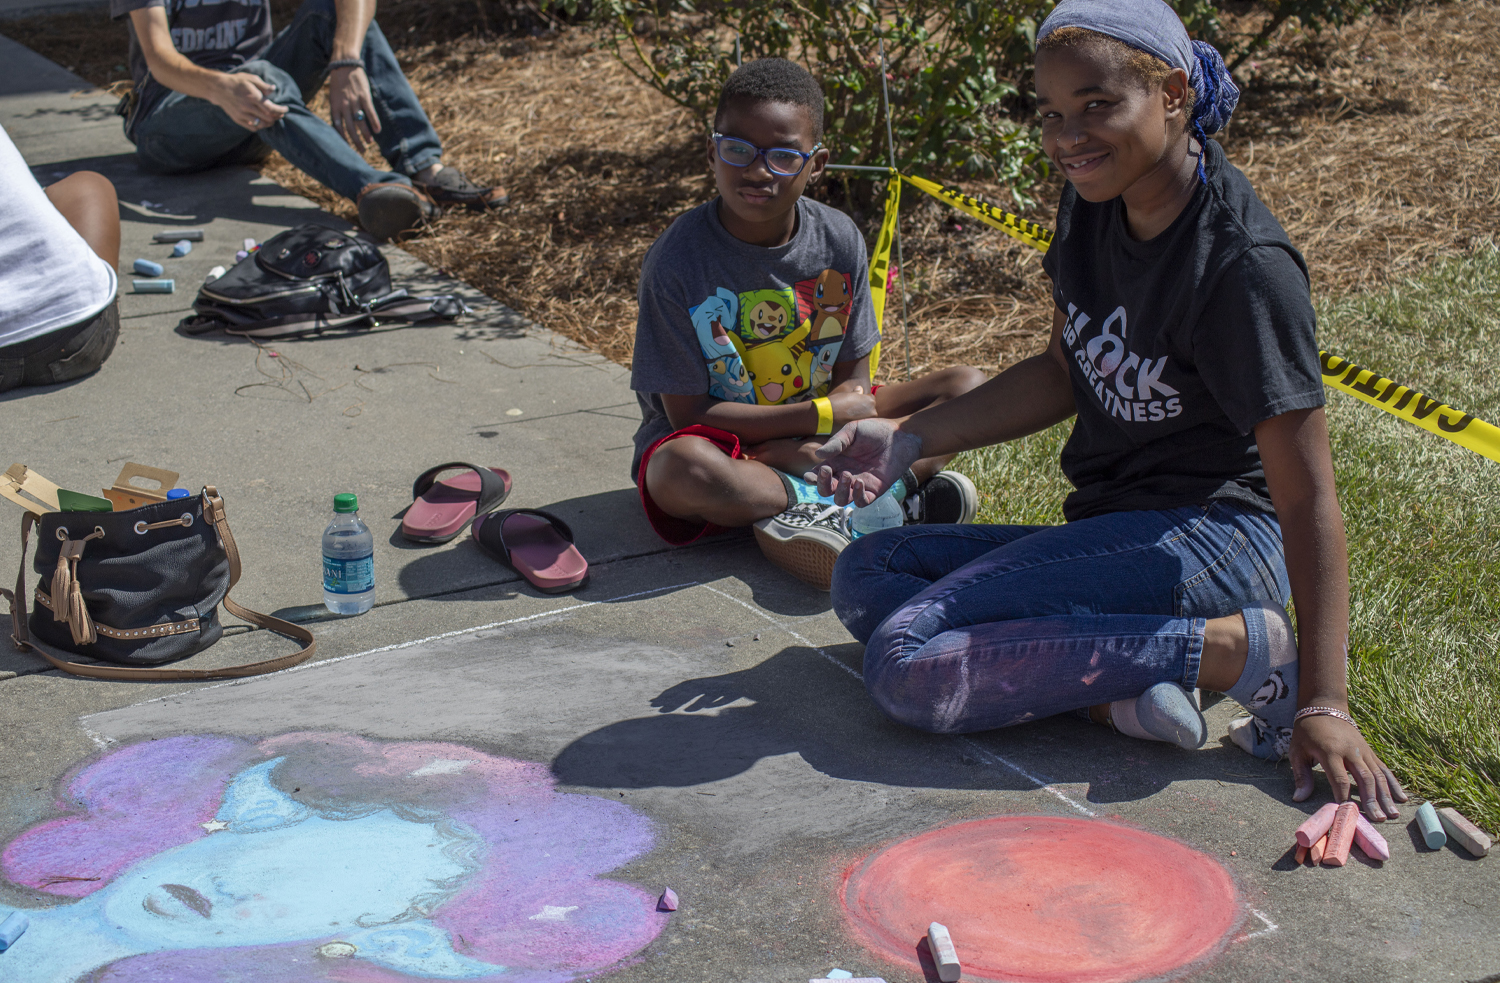 sidewalk chalk contest participants